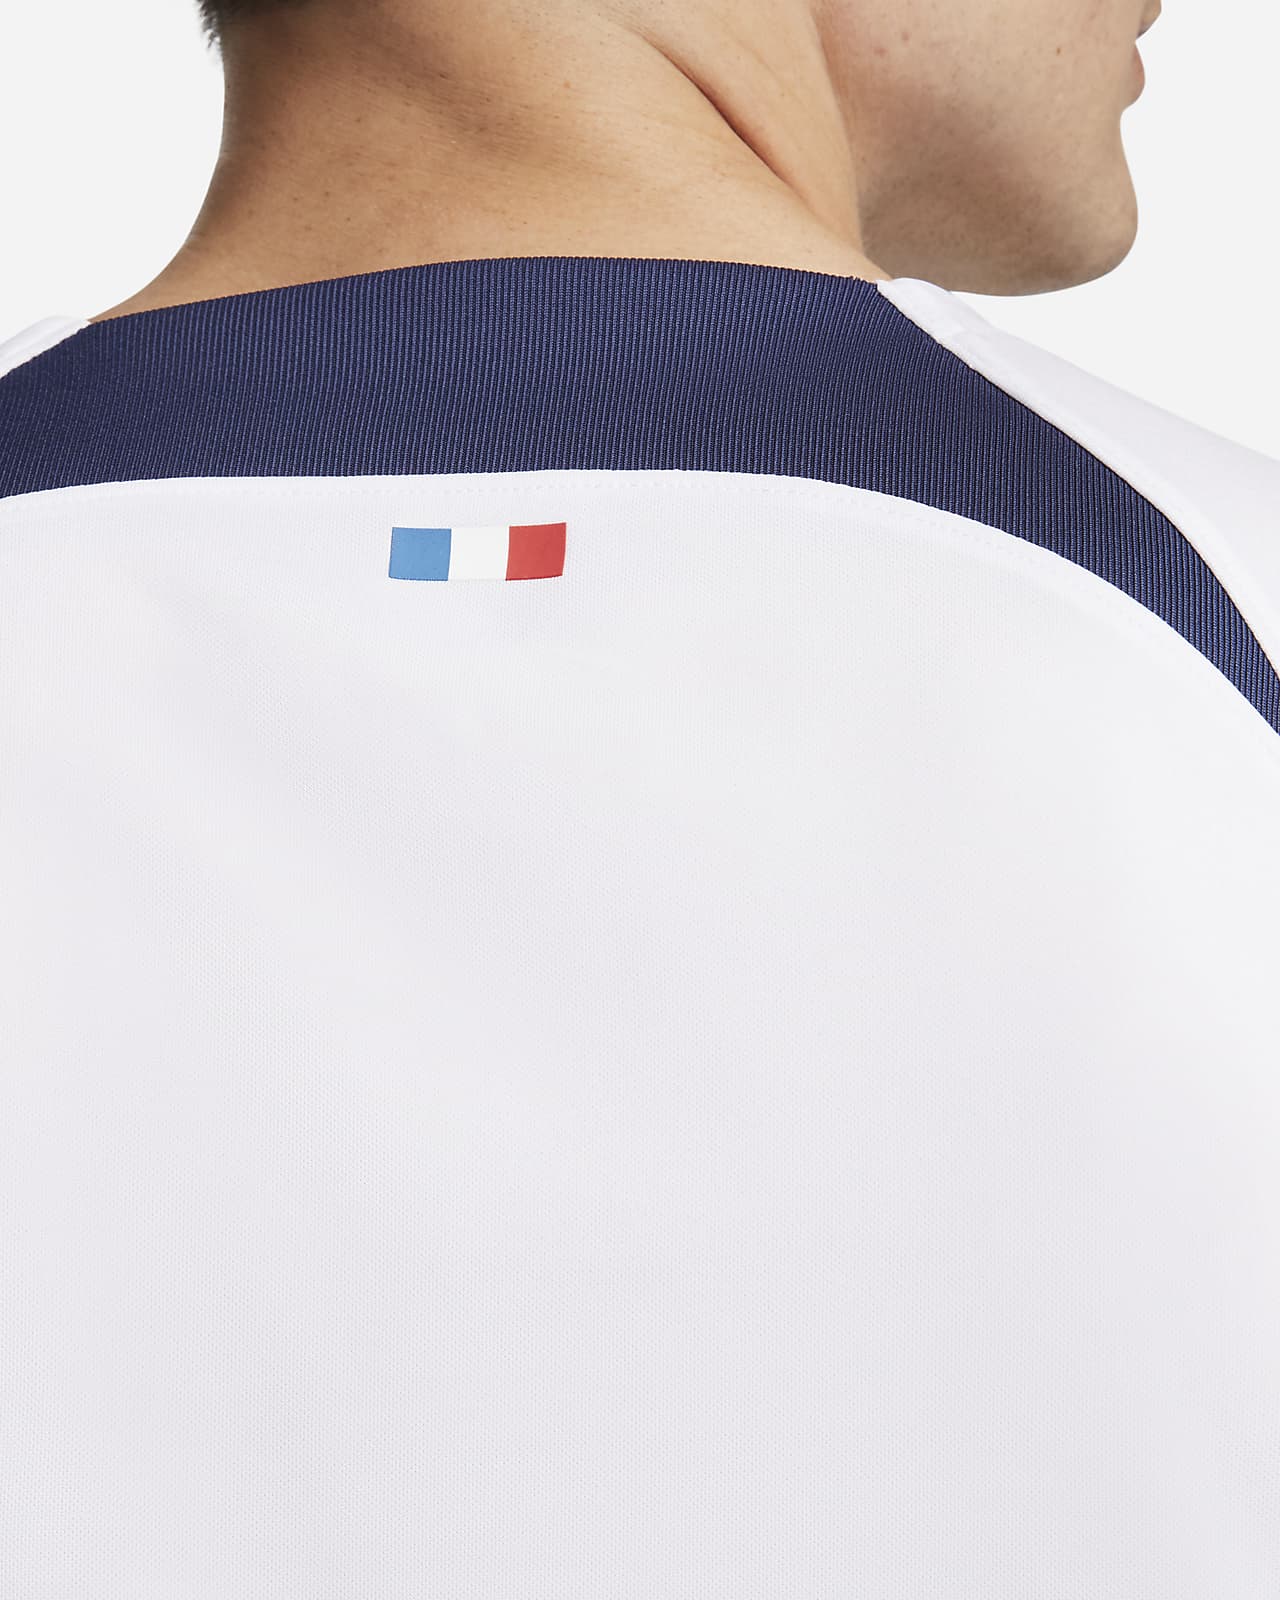 Nike Launch PSG 23/24 Away Shirt - SoccerBible